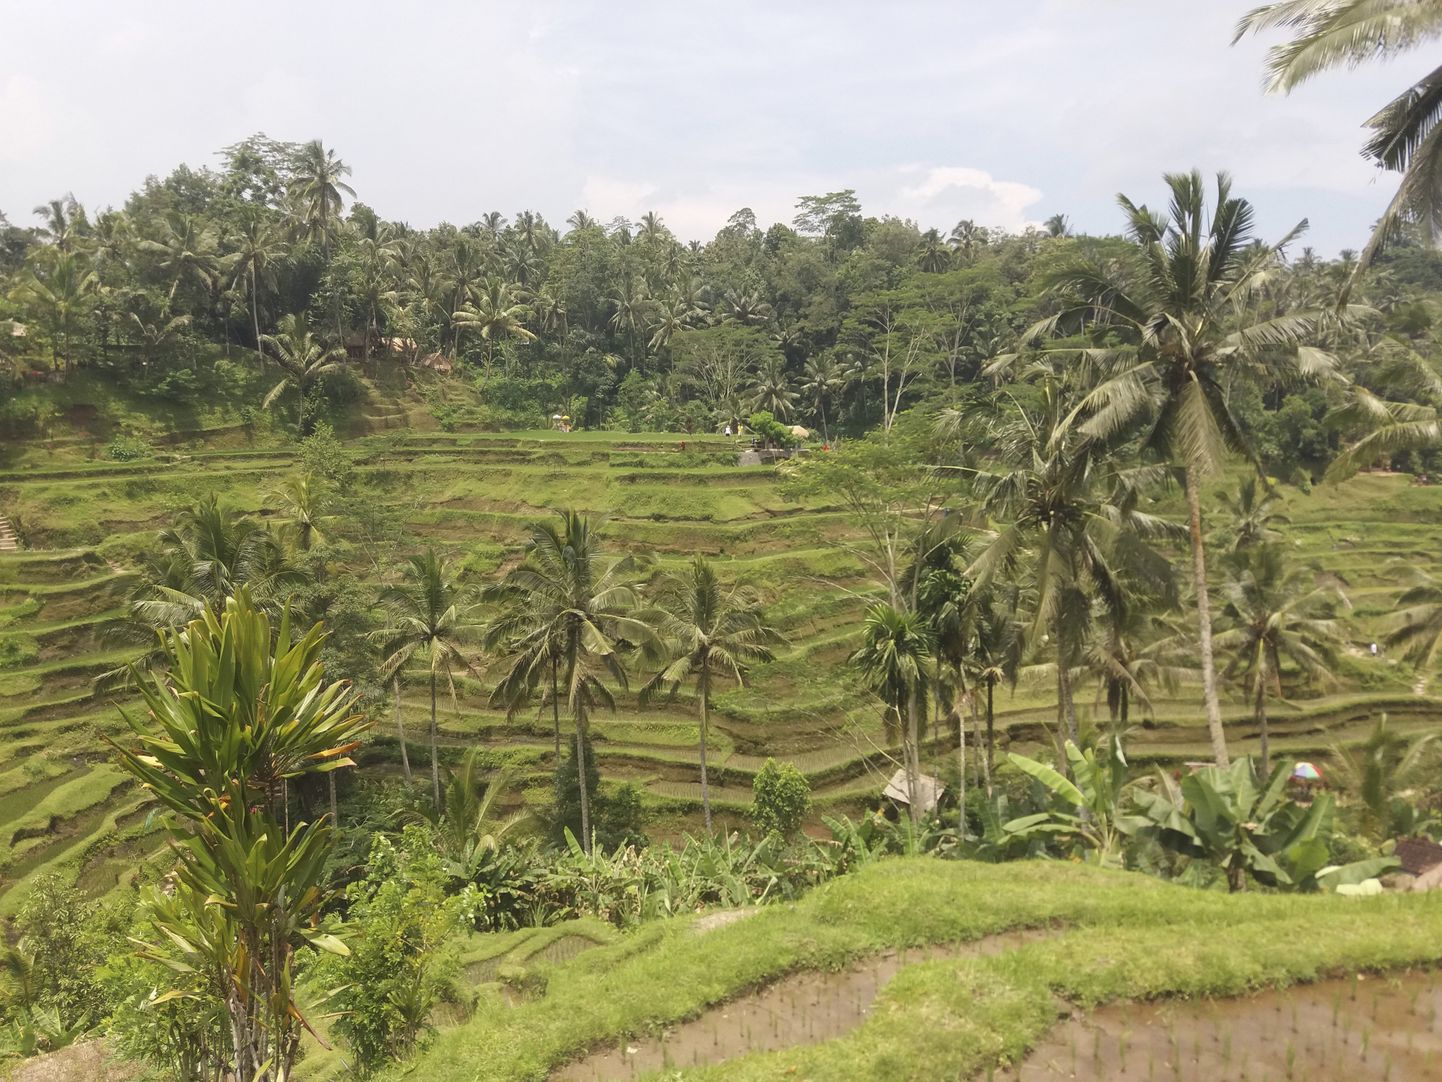 Lummavad riisiterrassid on kantud UNESCO maailmapärandi nimistusse. Balil leidub neid päris mitmes kohas. Ning loomulikult on nii riisiterrasside kui ka kõikide teiste vaatamisväärsuste juurde pääsemiseks vaja läbida paras tänavakauplejate rägastik.